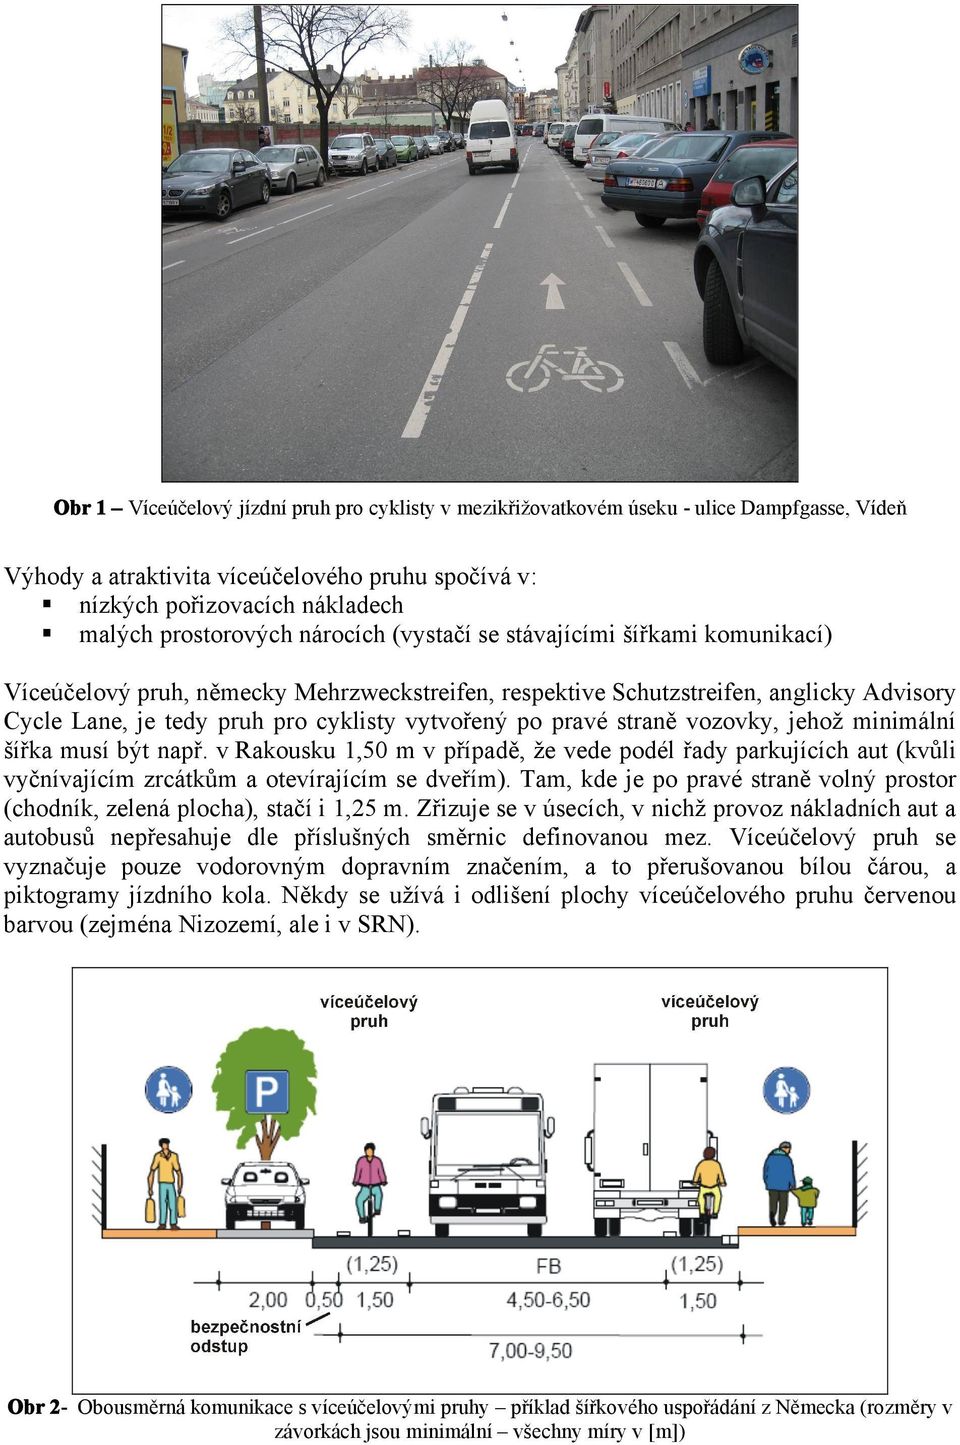 straně vozovky, jehož minimální šířka musí být např. v Rakousku 1,50 m v případě, že vede podél řady parkujících aut (kvůli vyčnívajícím zrcátkům a otevírajícím se dveřím).